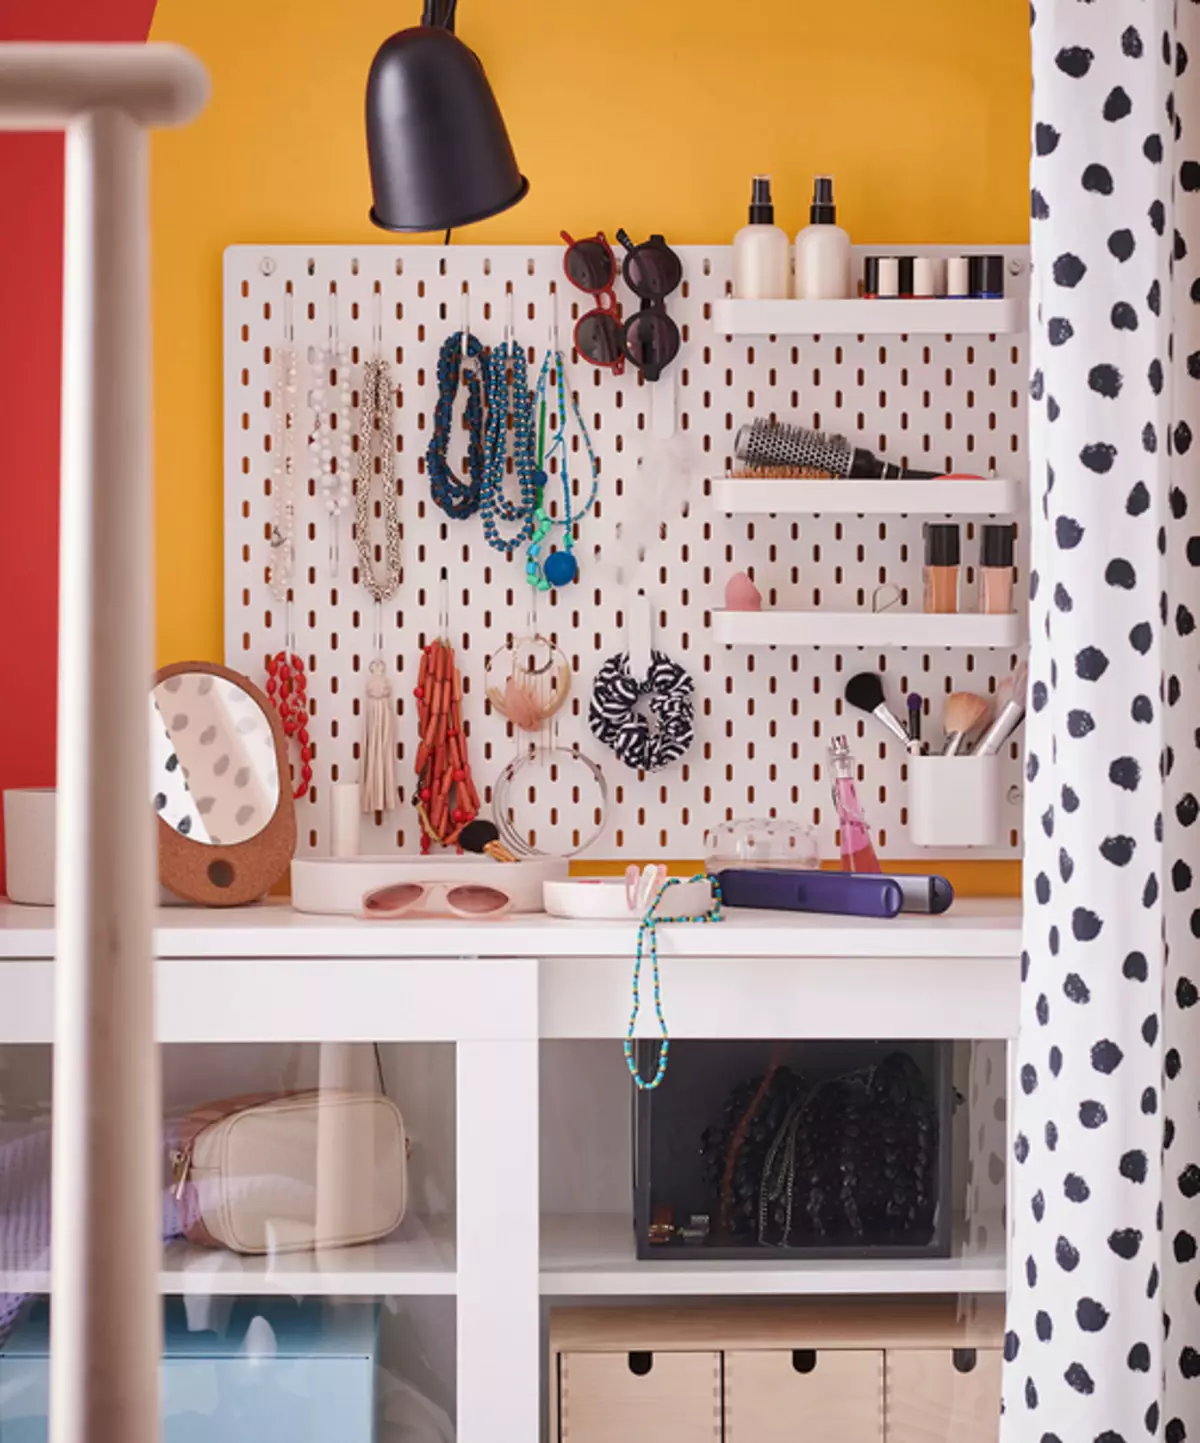 Microgardrantercy z IKEA: 5 oryginalnych pomysłów, które są nawet odpowiednie dla najmniejszego pokoju 5803_10